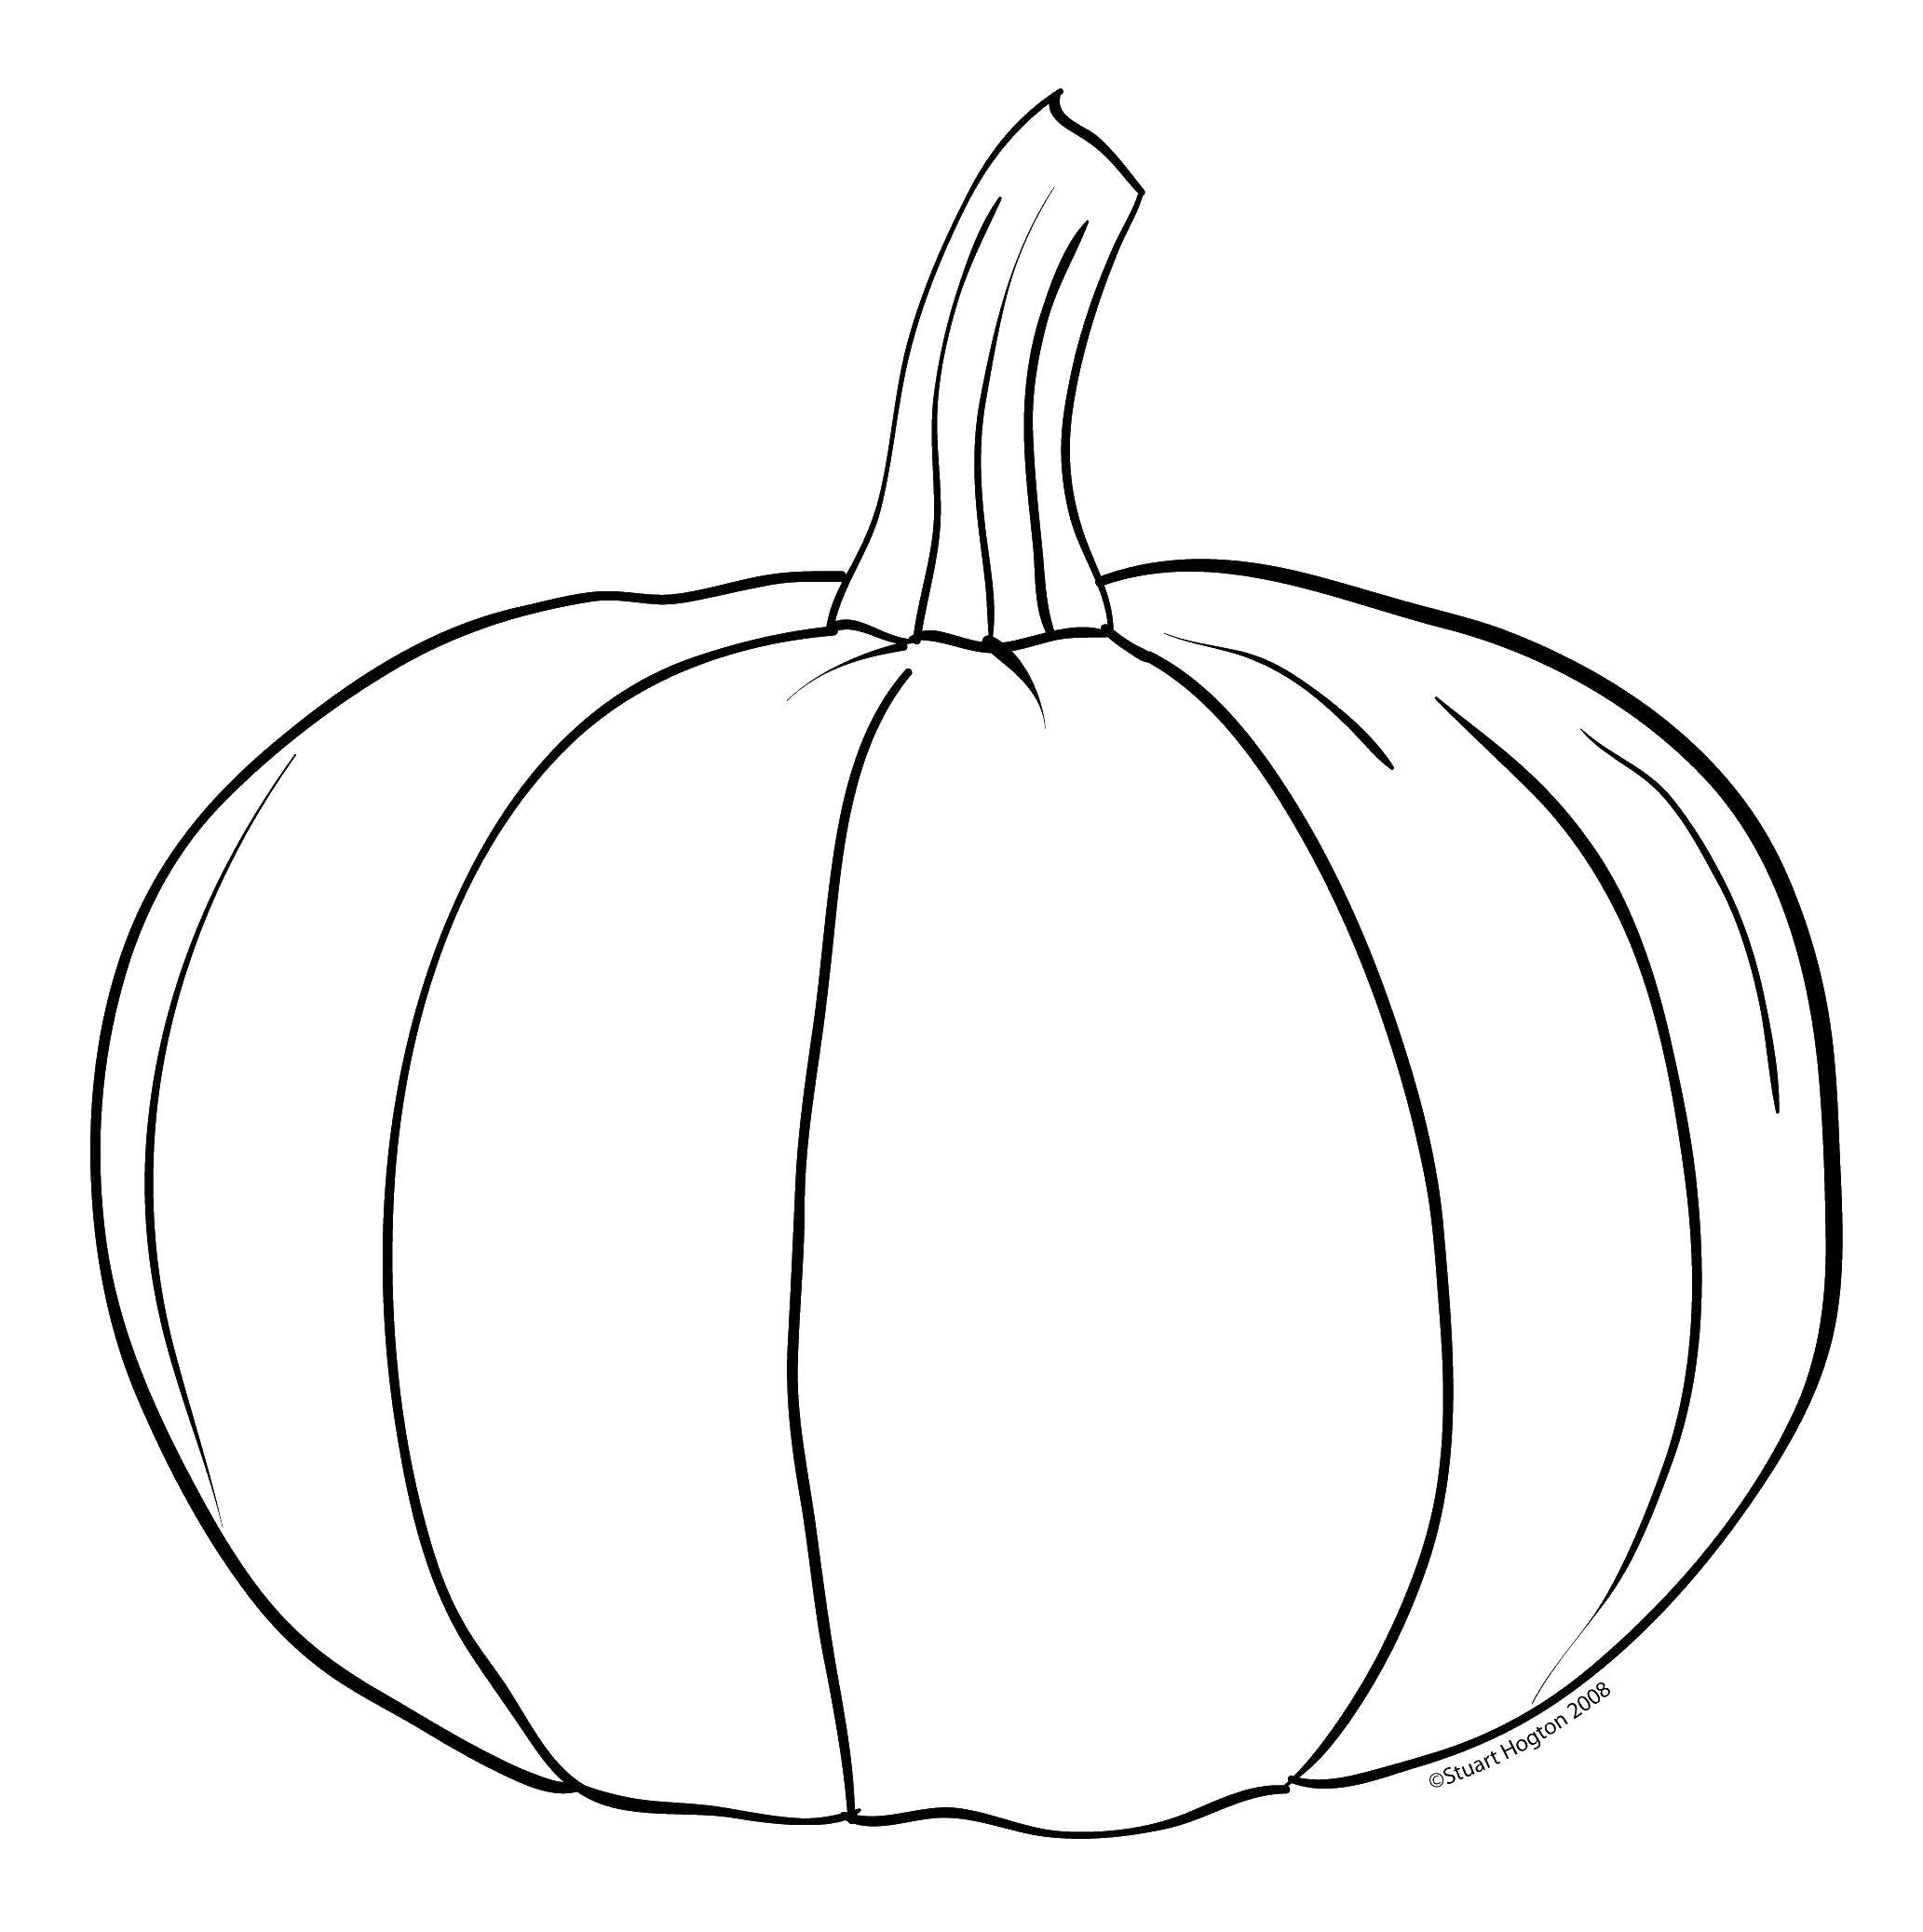 Coloring Pumpkin. Category pumpkin Halloween. Tags:  Halloween, pumpkin.